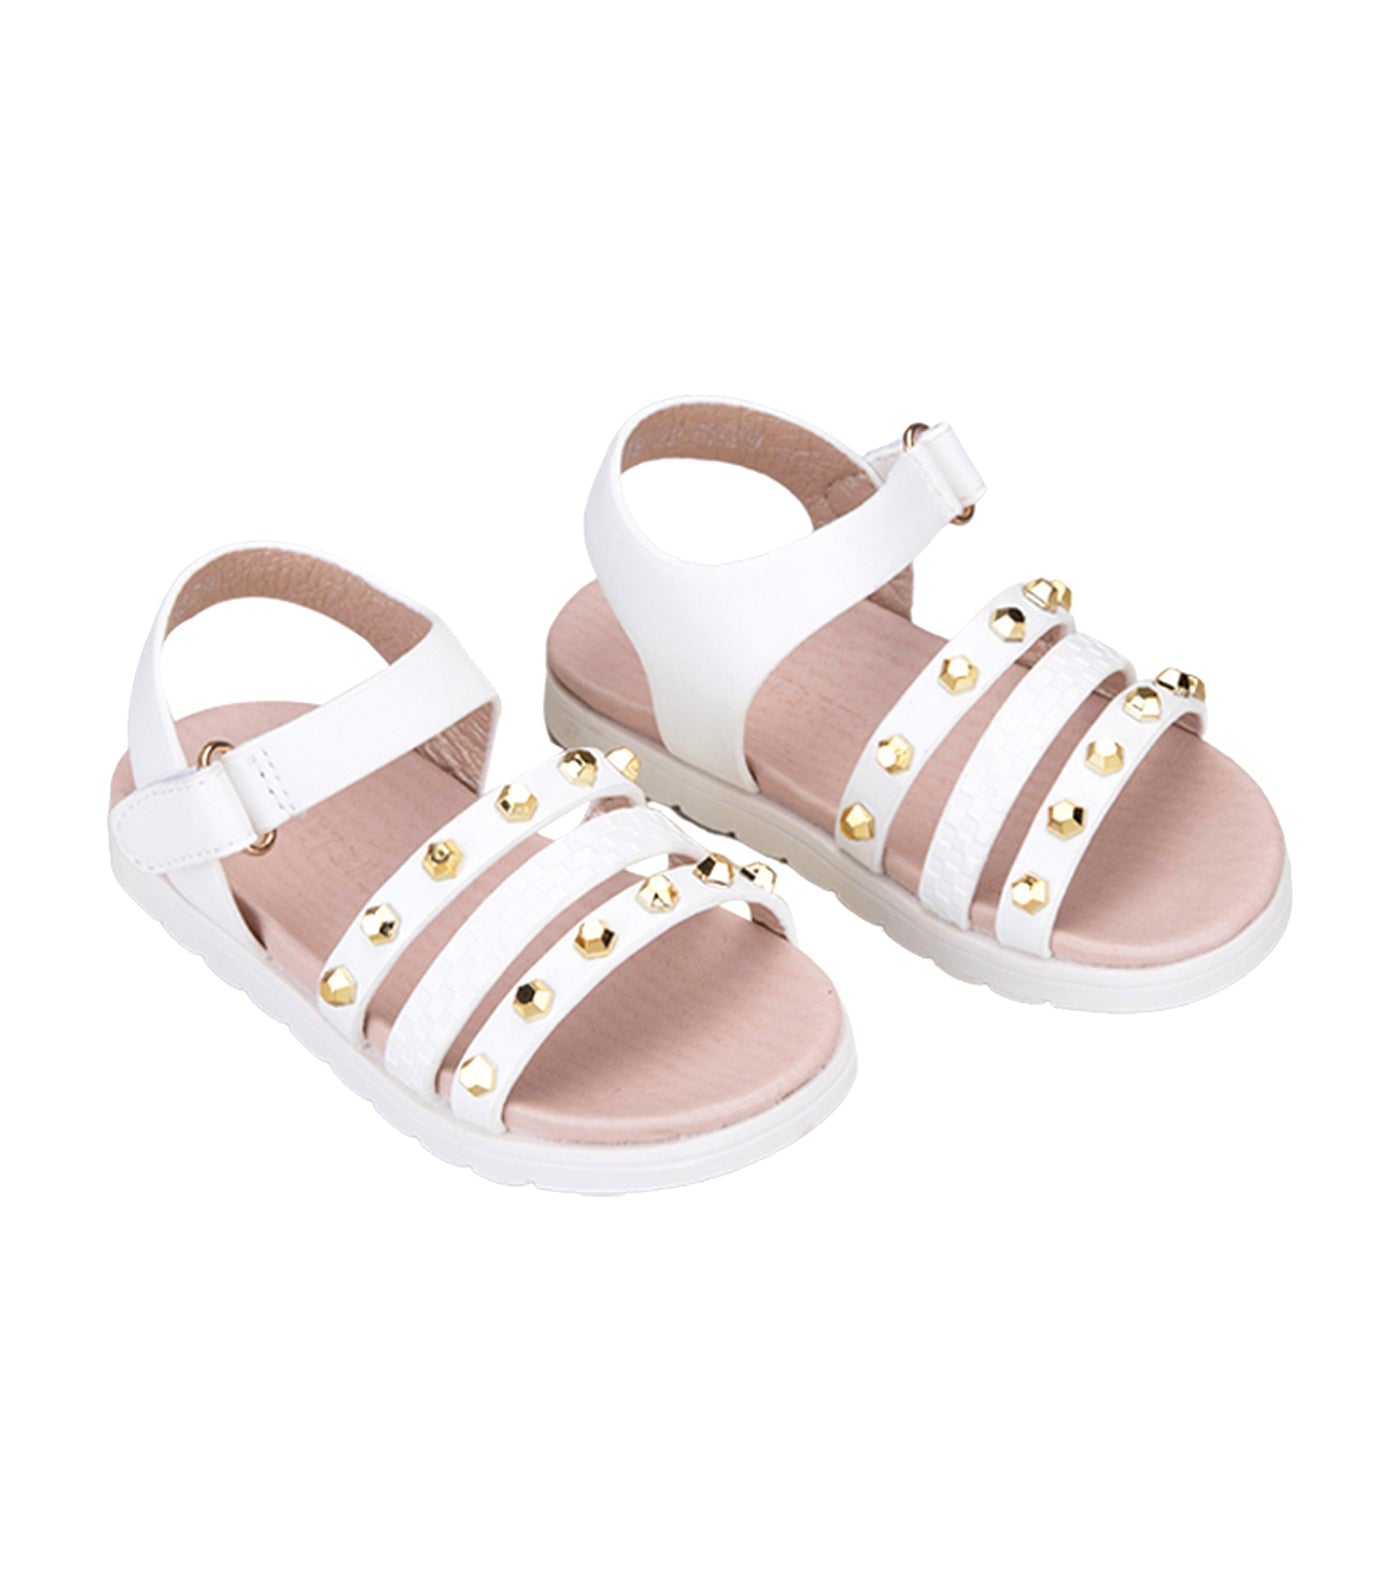 Betts Kids Sandals for Girls - White